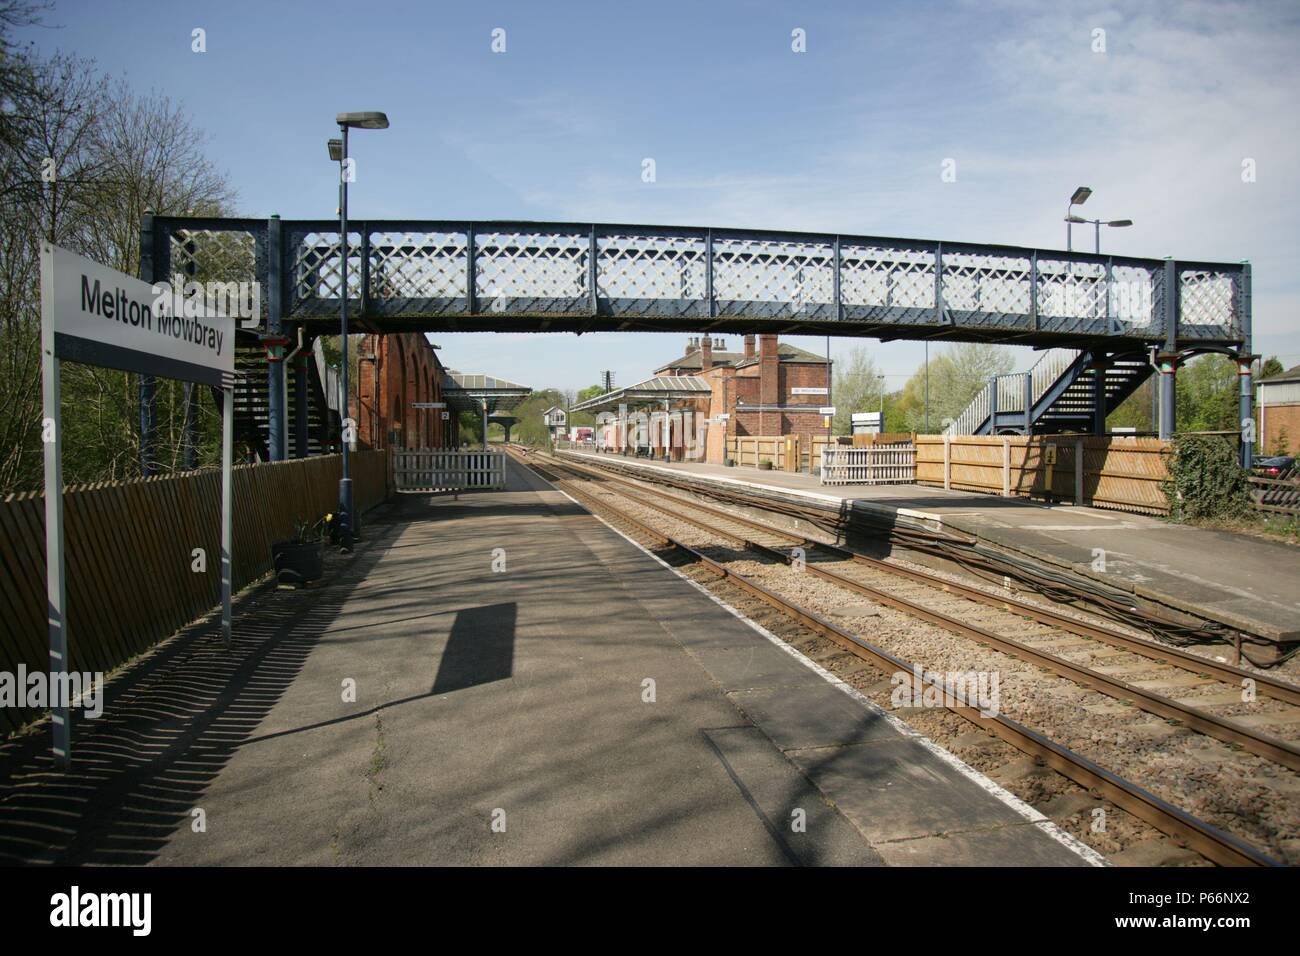 Vista general de plataformas de estación de Melton Mowbray, Leicestershire mostrando pasarela y plataforma de señalización. 2007 Foto de stock